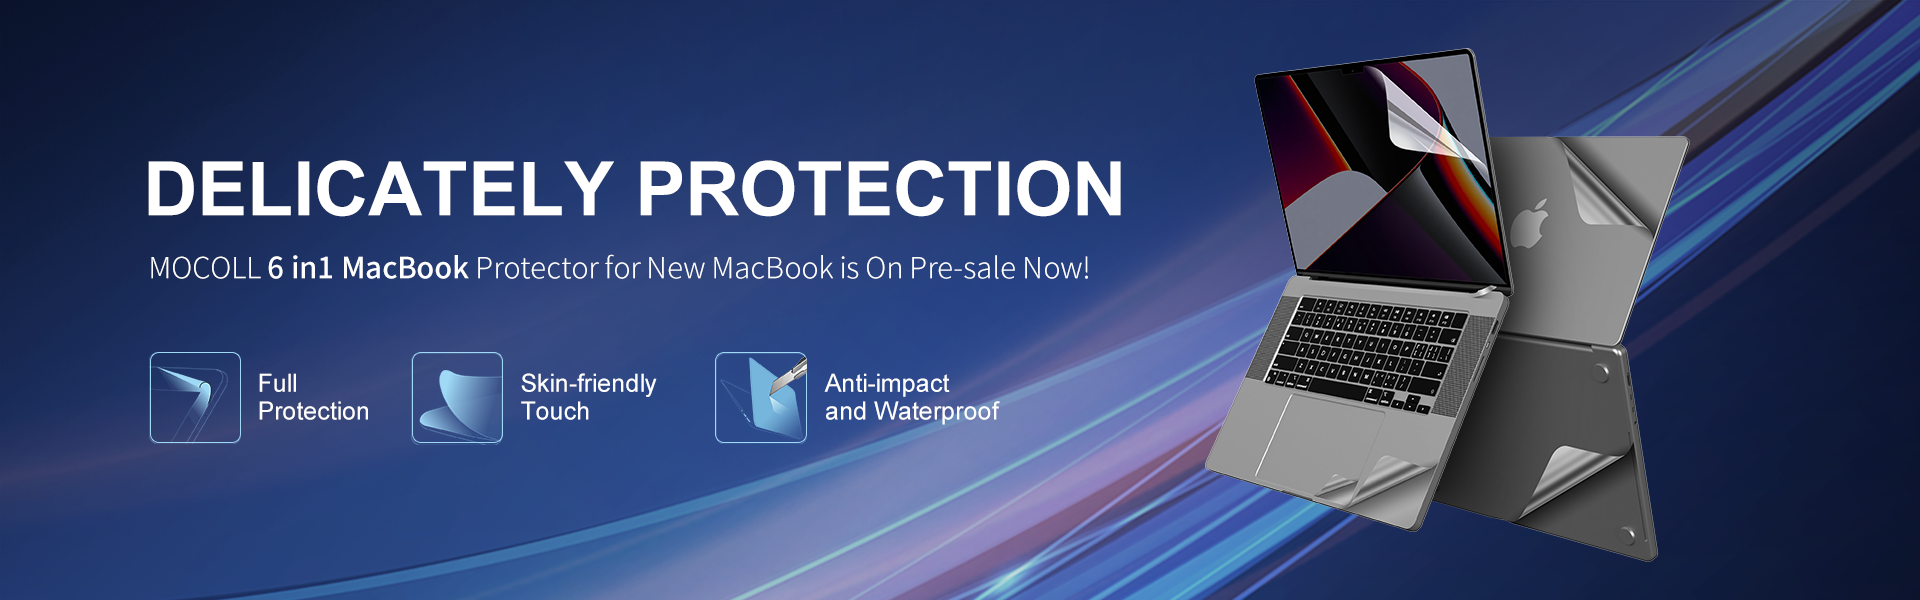 La nuova protezione per Macbook 6 in 1 è ora in vendita!